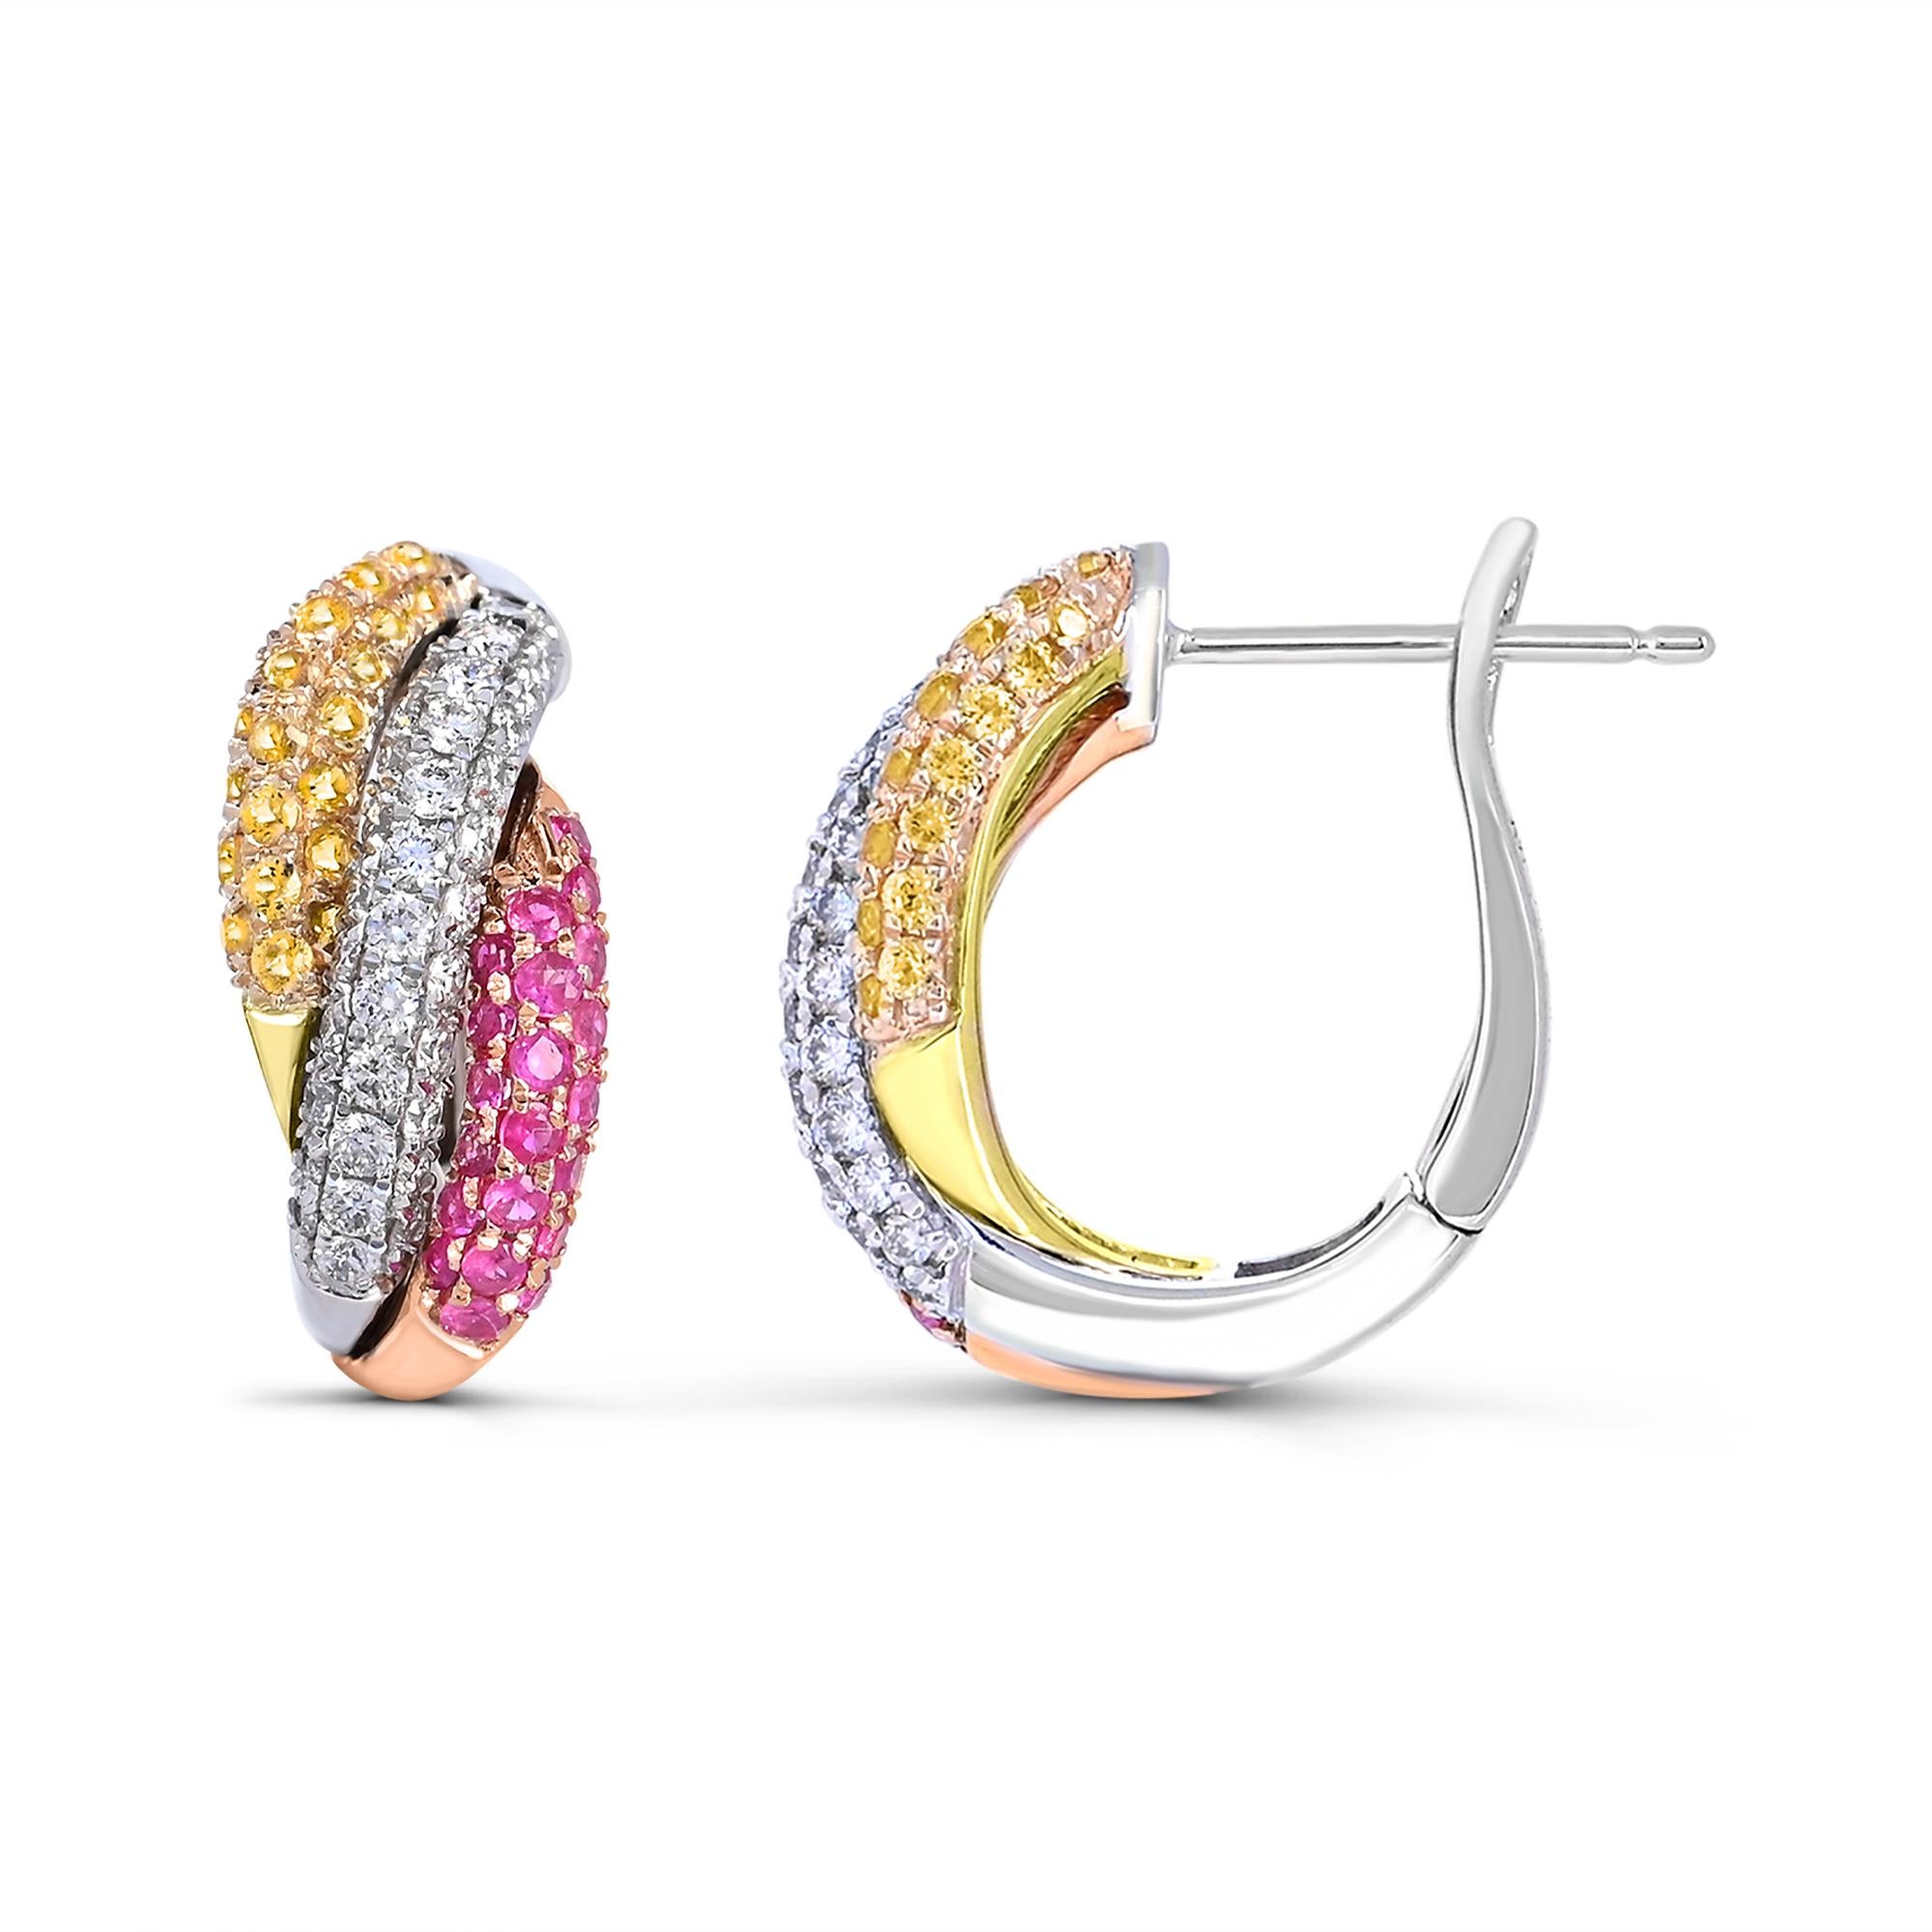 Diese mit viel Liebe zum Detail gefertigten Ohrringe zeichnen sich durch die perfekte Kombination von 14 Karat Gelb-, Rosé- und Weißgold aus. Die runden weißen Diamanten im Vollschliff in AA-Qualität sorgen für ein atemberaubendes Funkeln, während